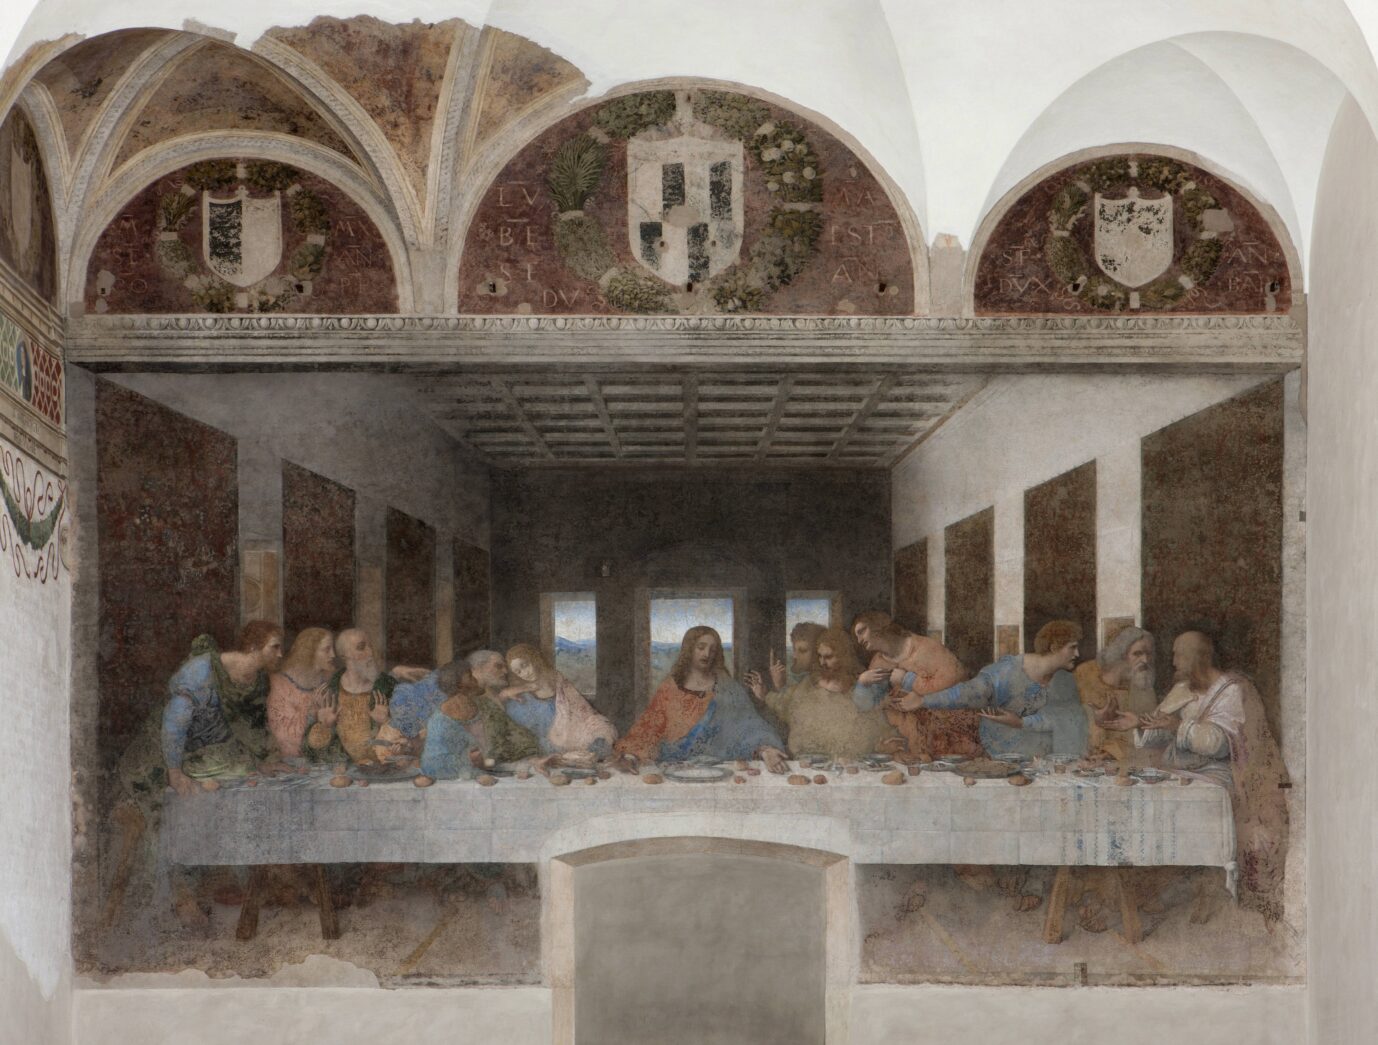 „Das Abendmahl“ von Leonardo da Vinci: Dieses Bild als Imbißwagen-Aufmachung in Saarland fanden einige wohl geschmacklos (Symbolbild)